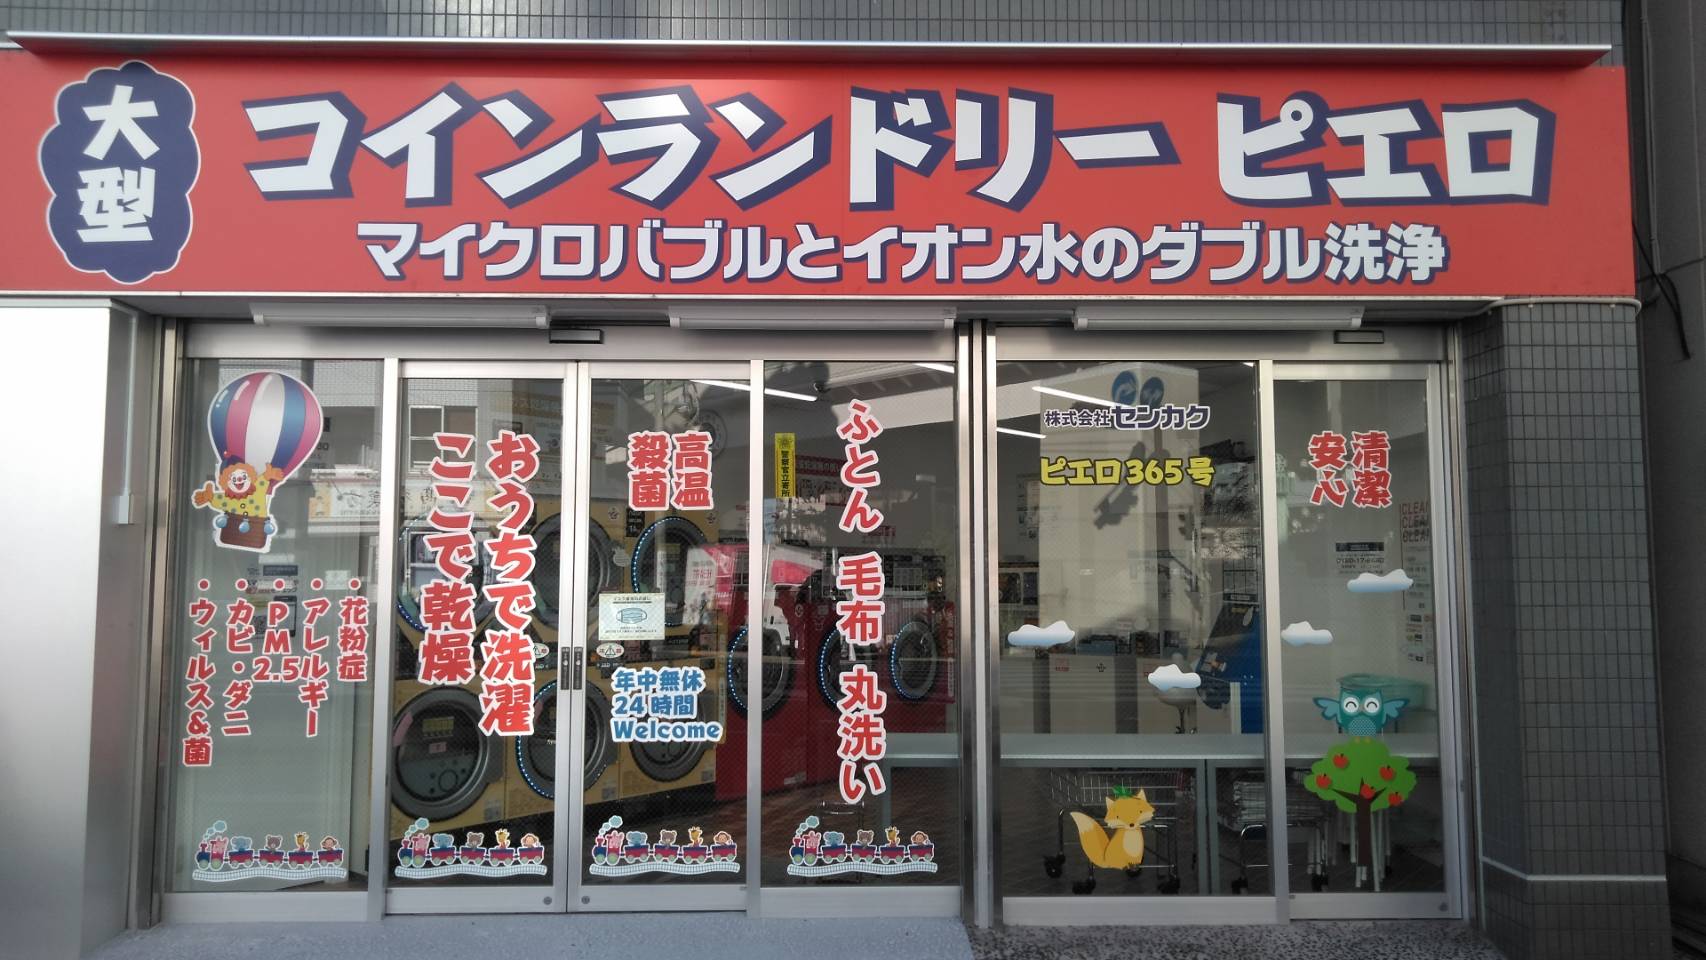 コインランドリーピエロ 365号 3石川町店の写真